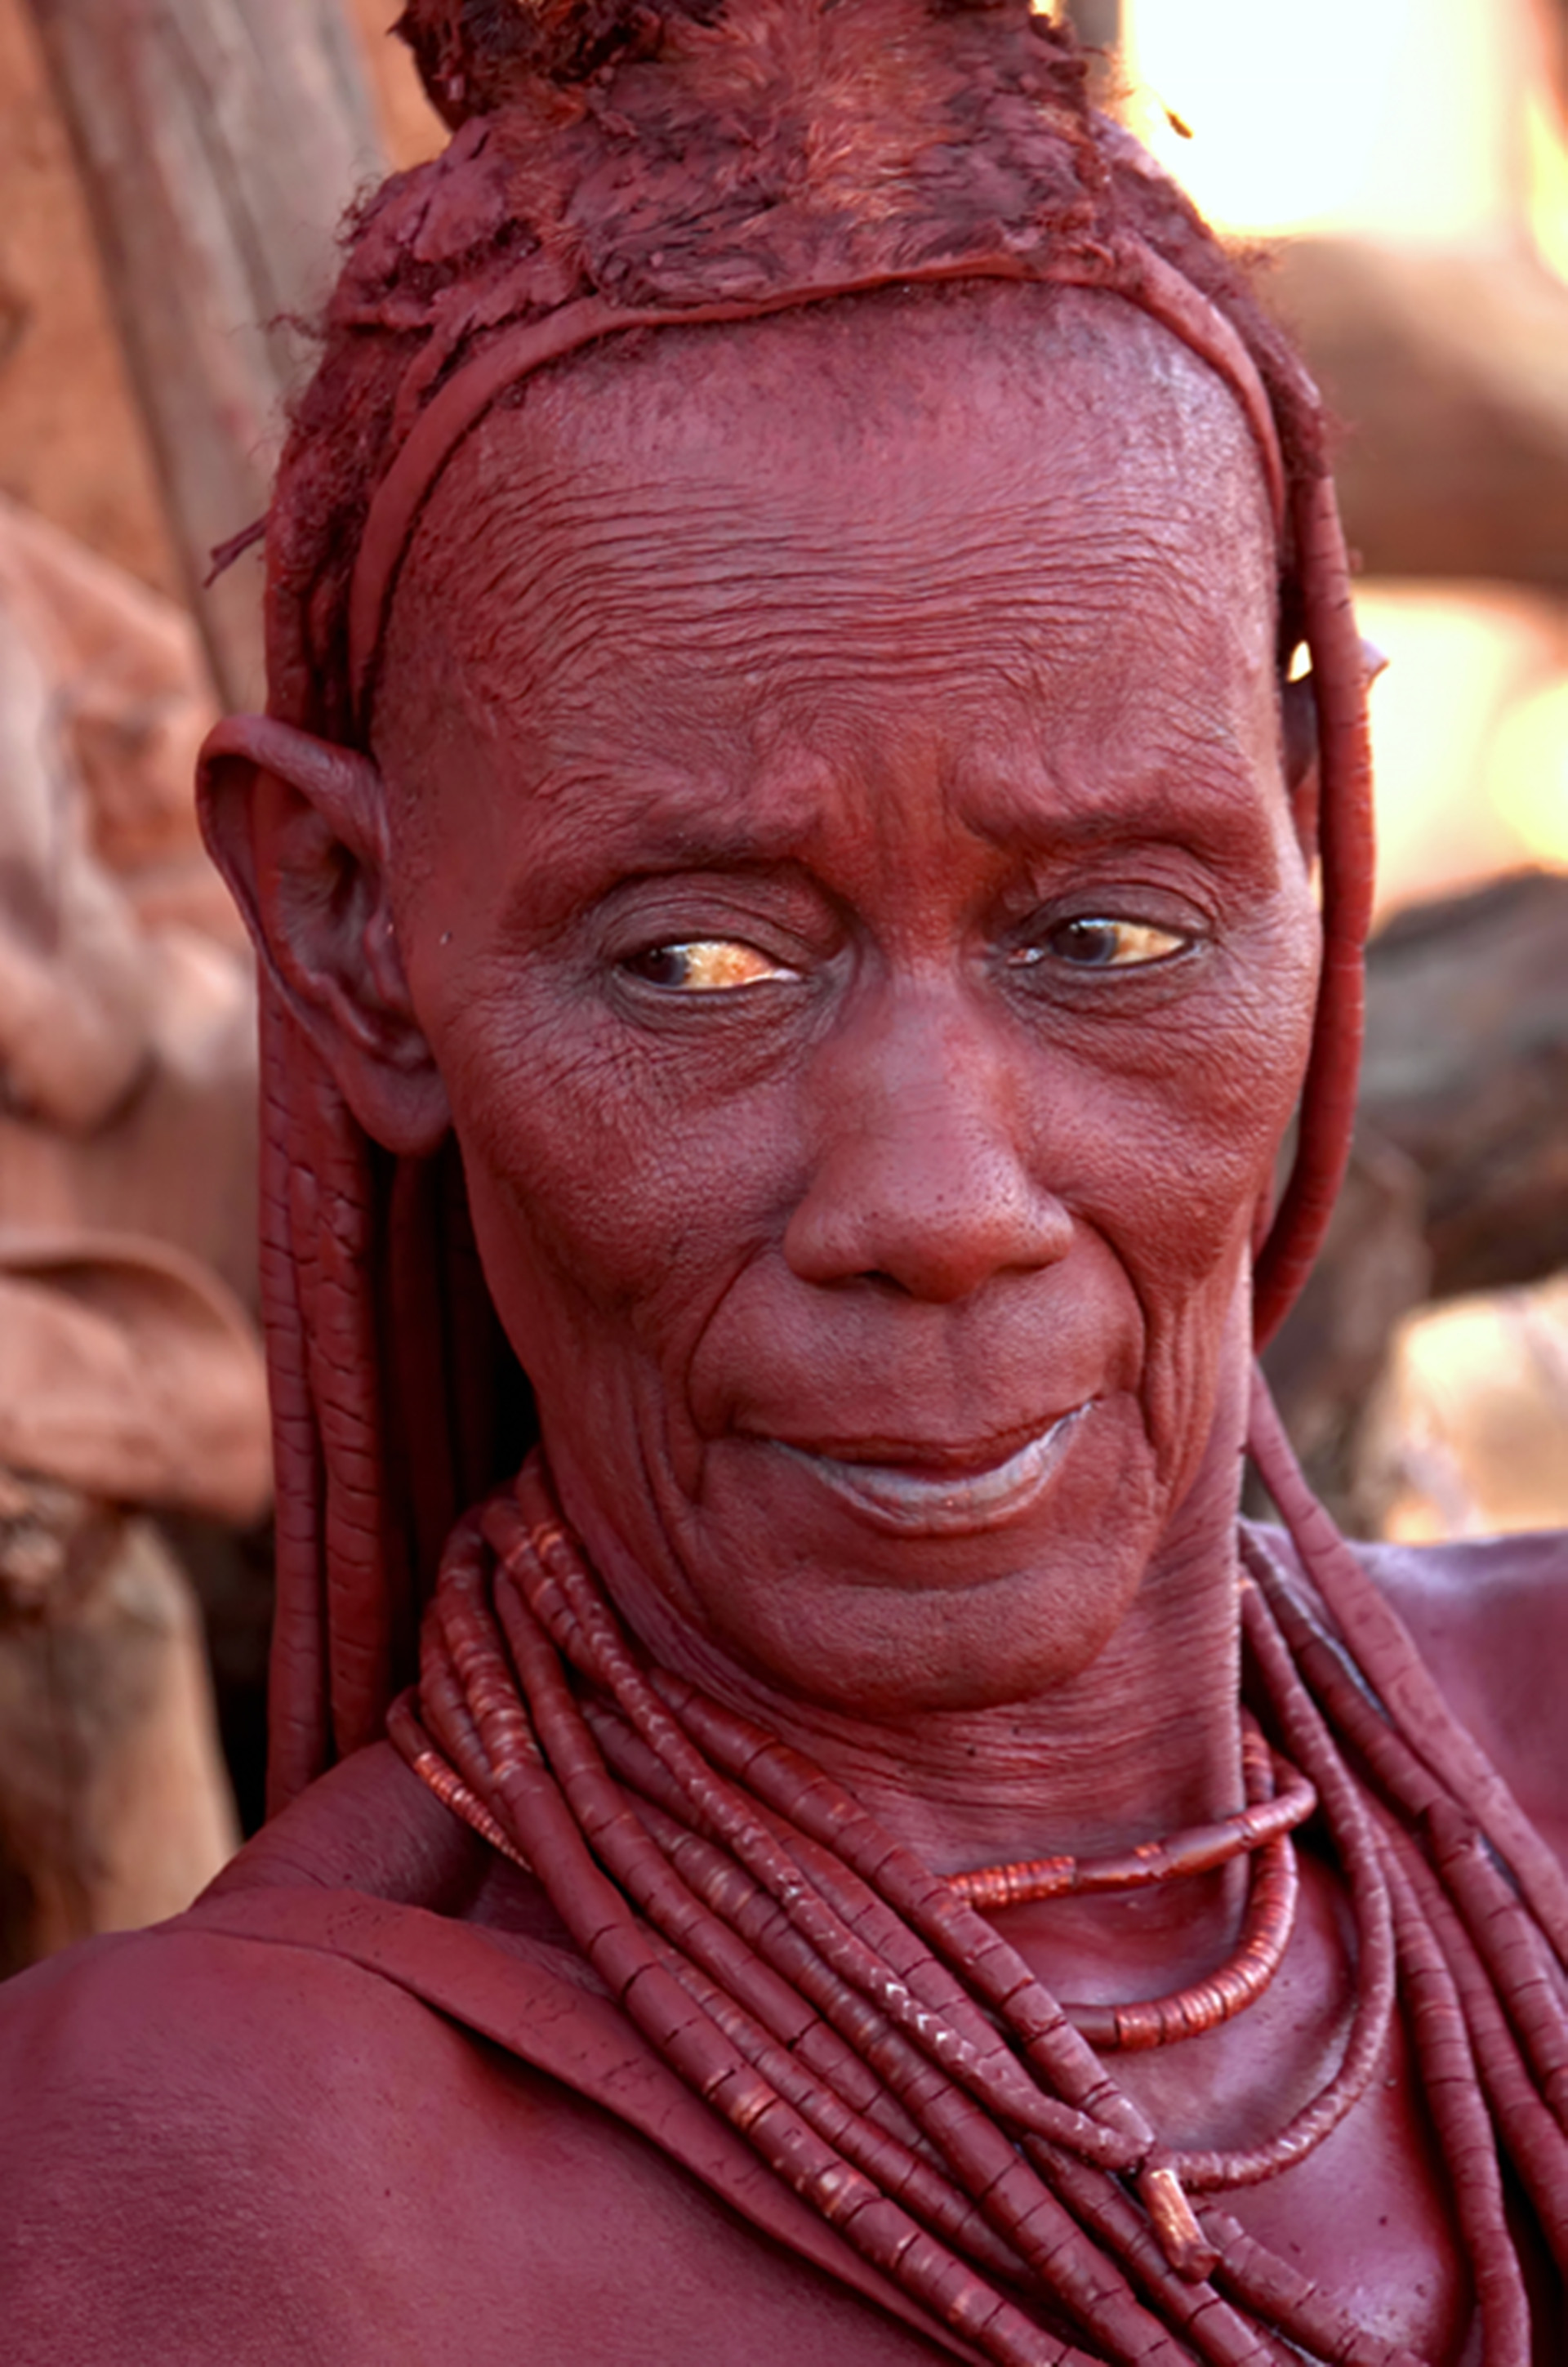 王方辰的狂野非洲,红色泥人部落特写(图)